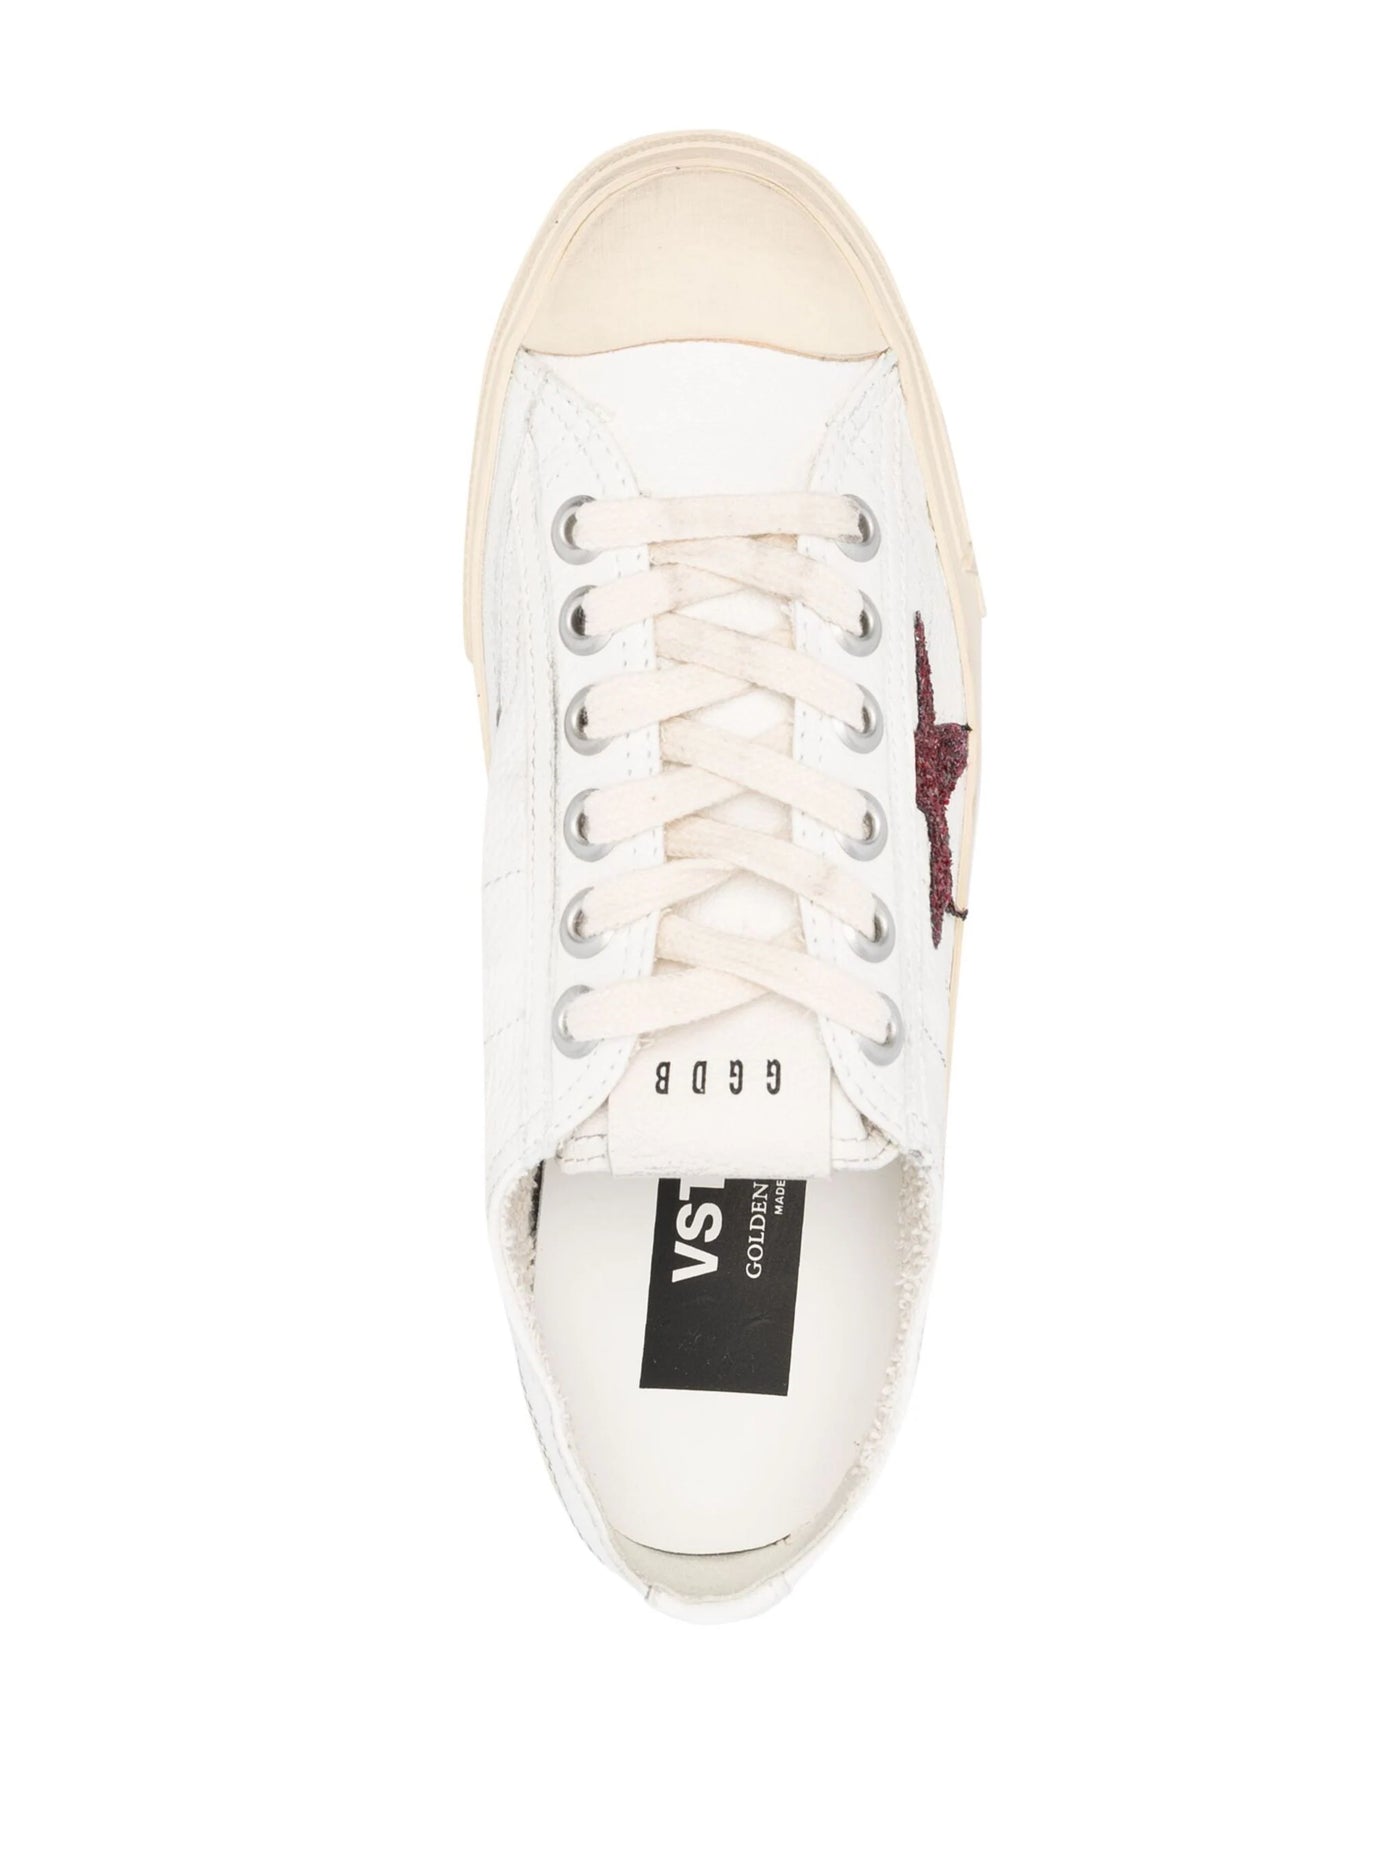 V-Star Leather Sneaker - White/Red Glitter